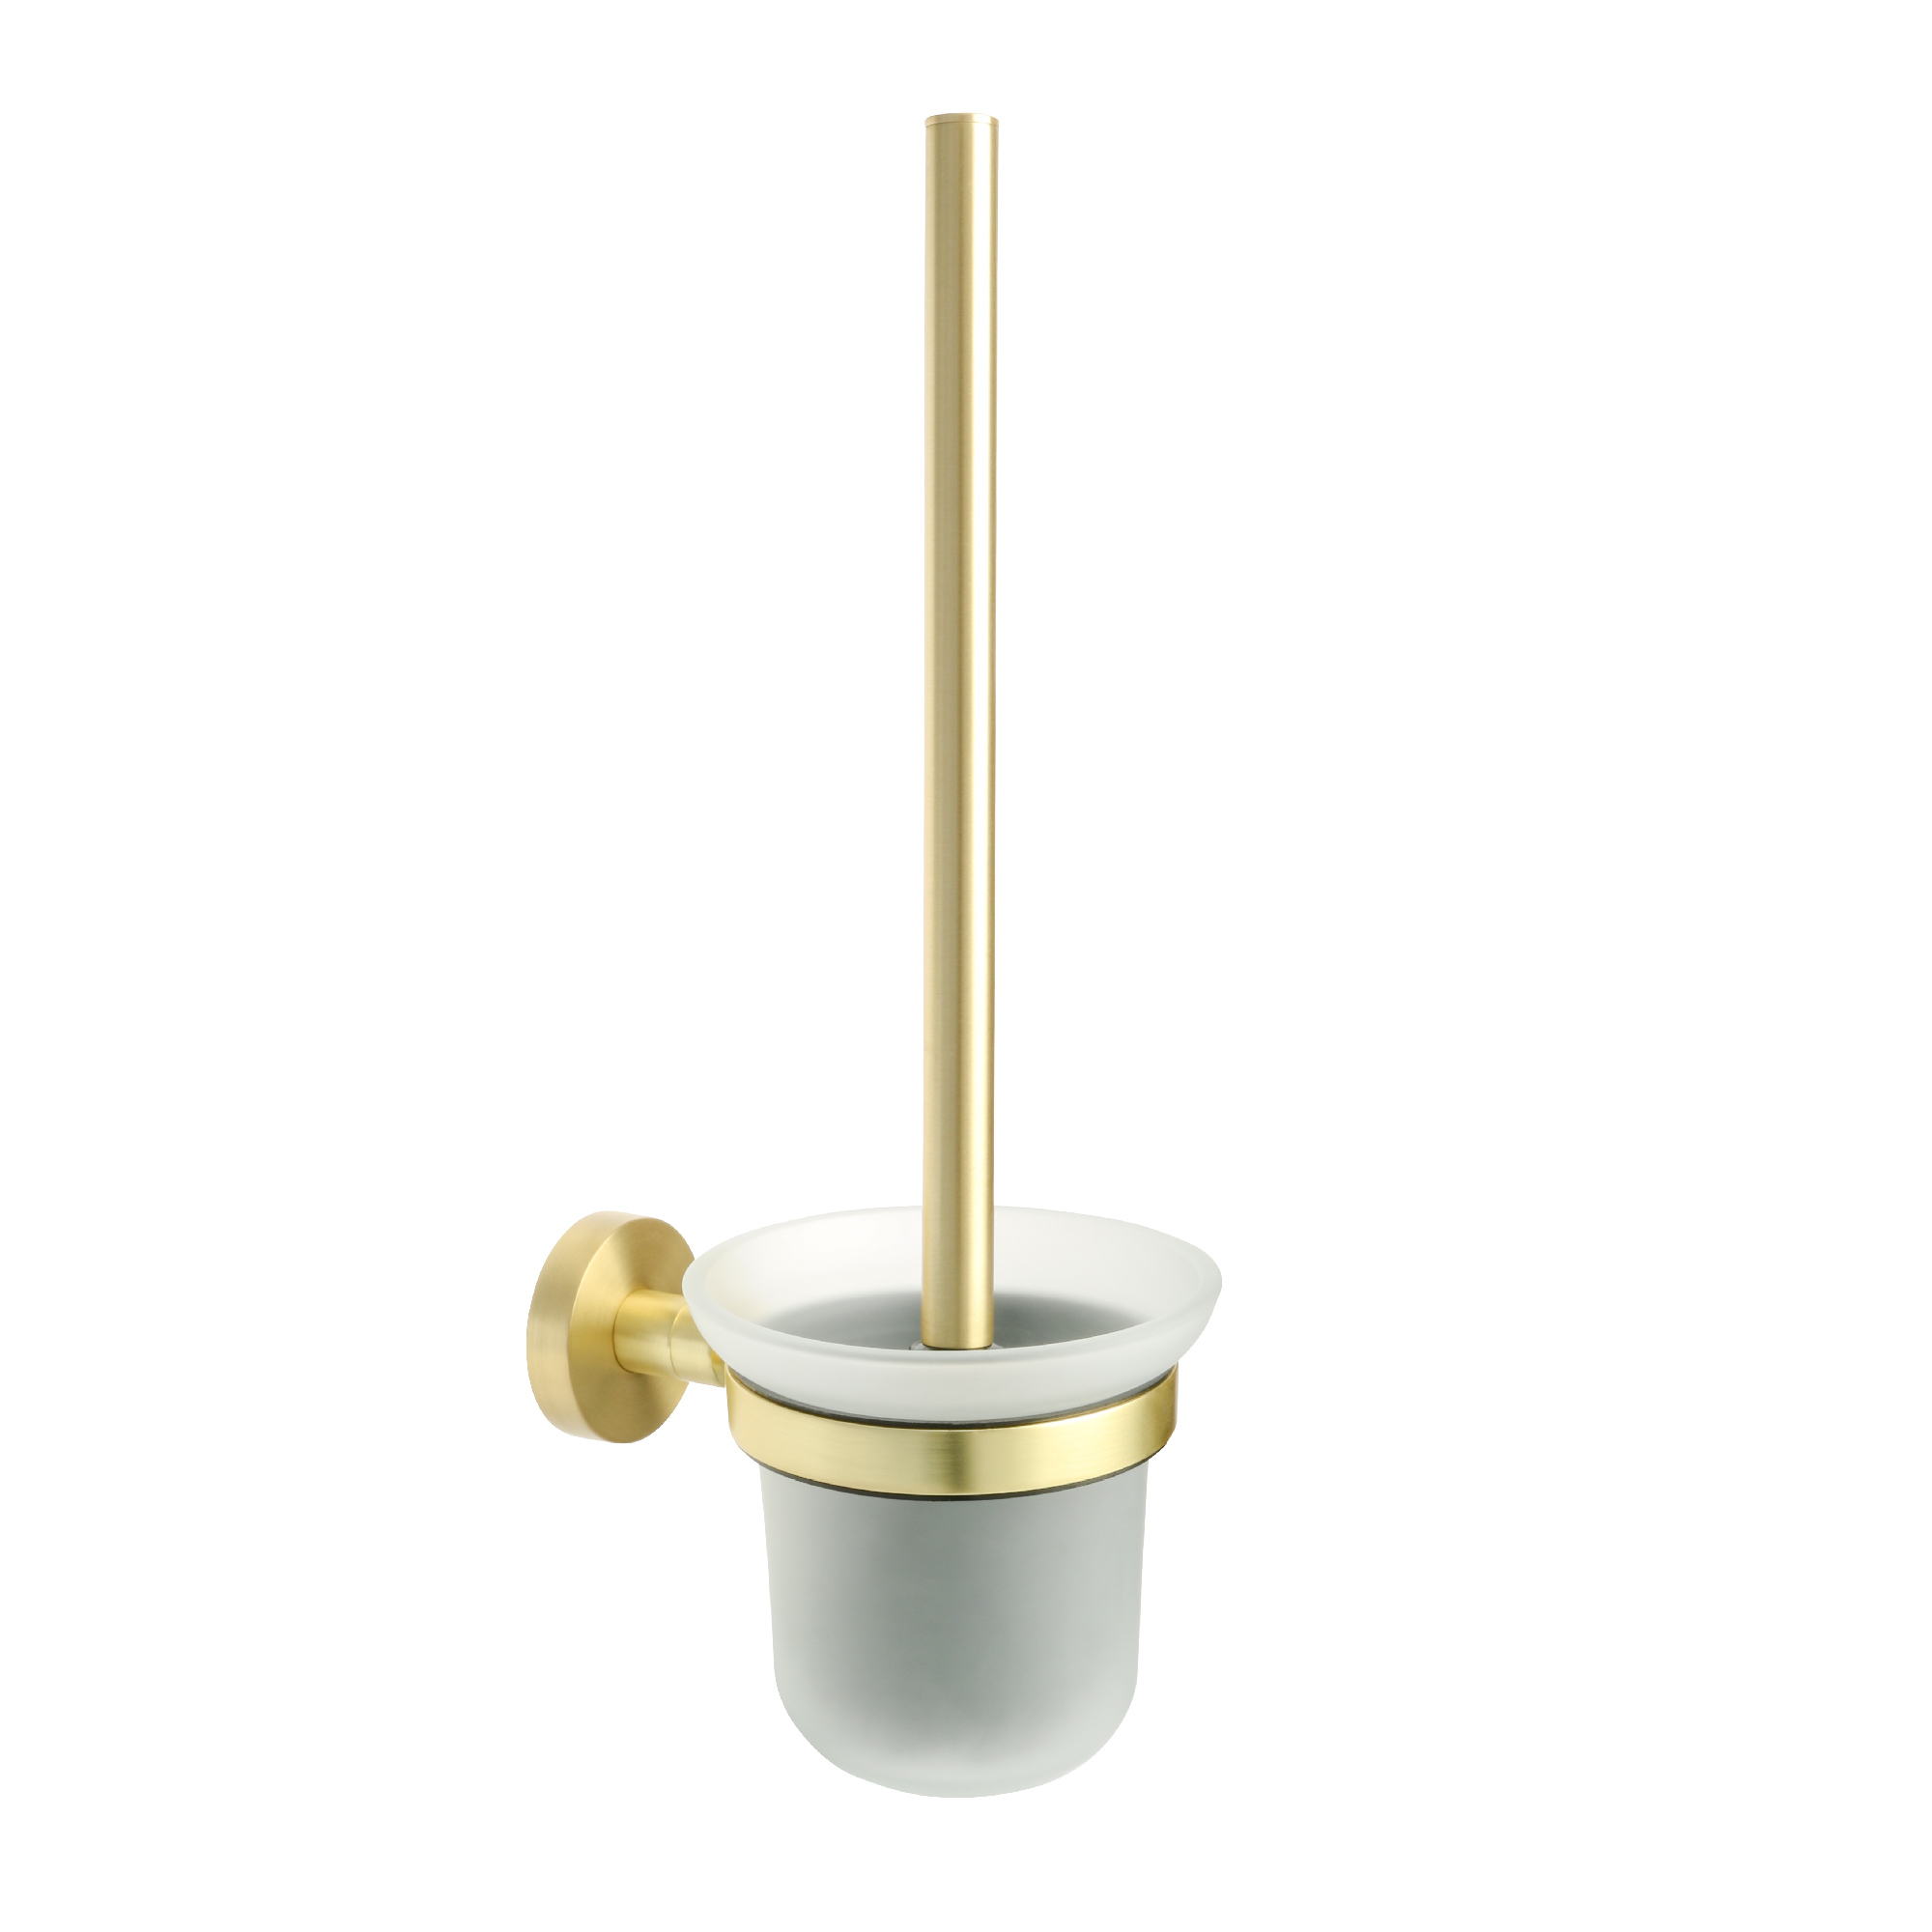 Ерш для туалета золото-сатин Fixsen Comfort Gold (FX-87013) - фото 1